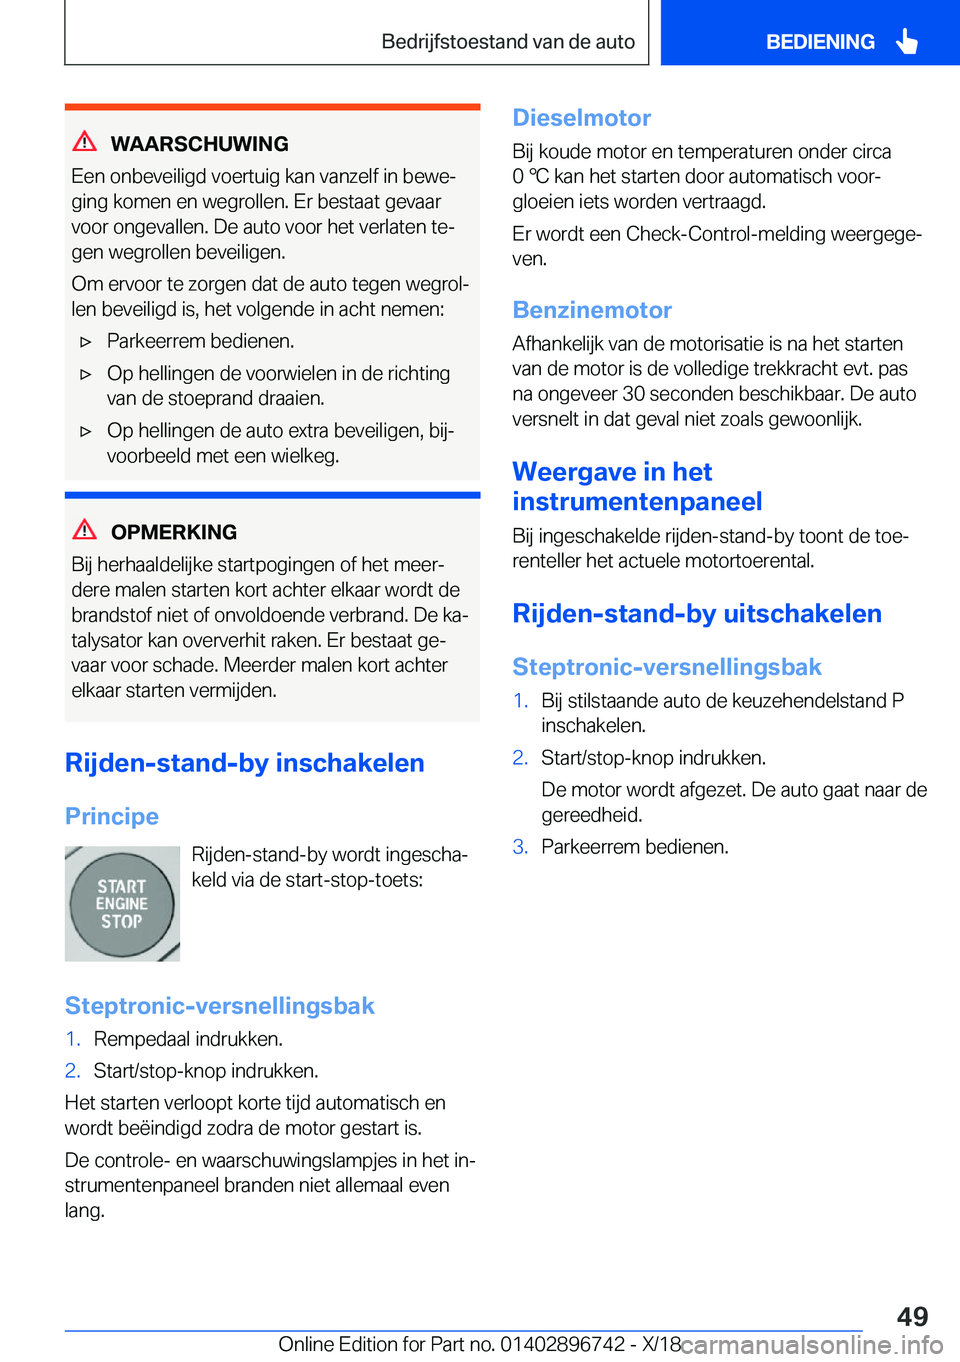 BMW X5 2019  Instructieboekjes (in Dutch) �W�A�A�R�S�C�H�U�W�I�N�G
�E�e�n��o�n�b�e�v�e�i�l�i�g�d��v�o�e�r�t�u�i�g��k�a�n��v�a�n�z�e�l�f��i�n��b�e�w�ej �g�i�n�g��k�o�m�e�n��e�n��w�e�g�r�o�l�l�e�n�.��E�r��b�e�s�t�a�a�t��g�e�v�a�a�r